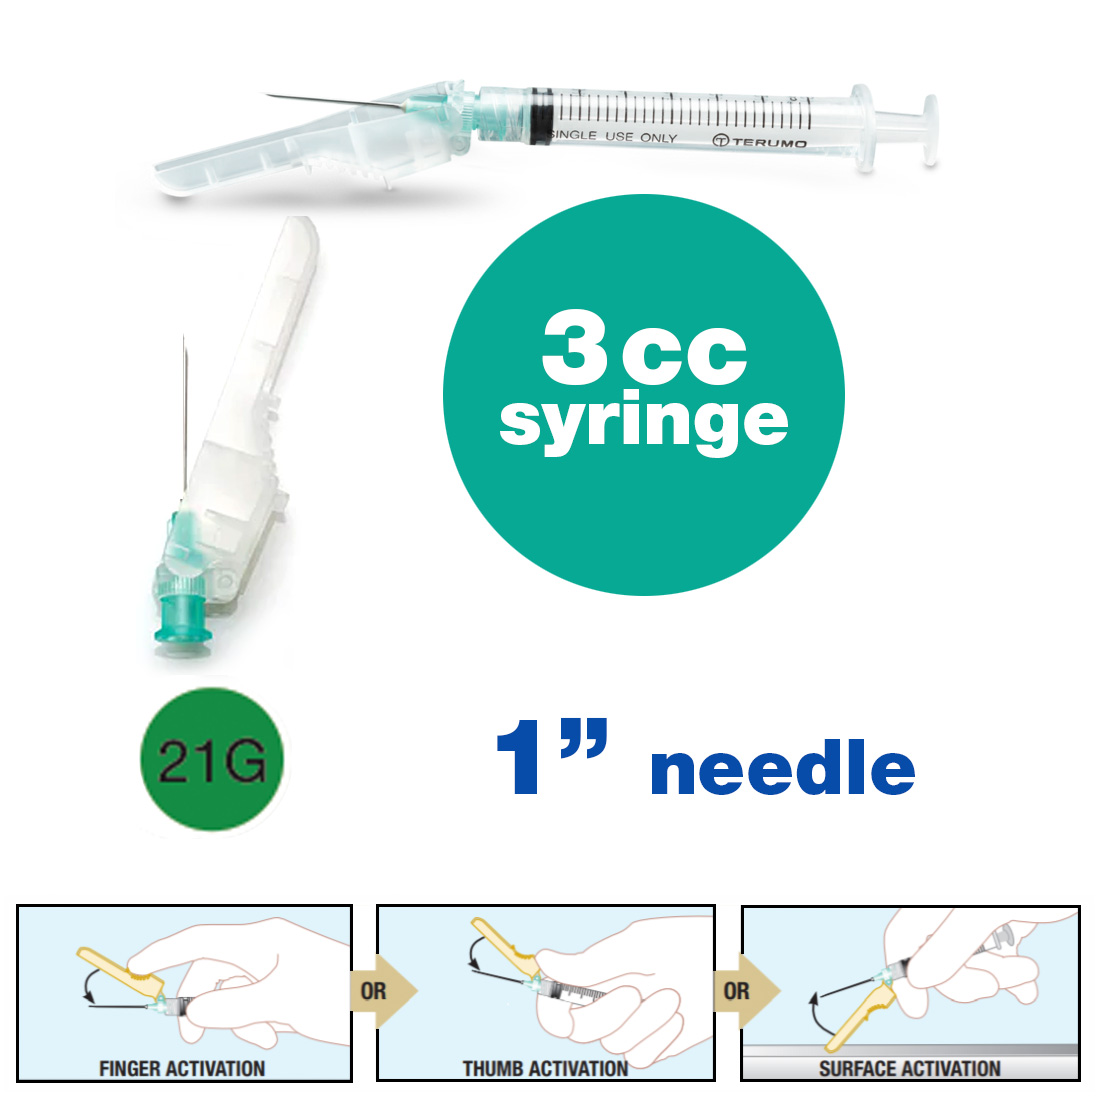 SurGuard® 3 Safety Hypodermic Needle, 3CC Syringe with 21G x 1" Needle - 100/Box